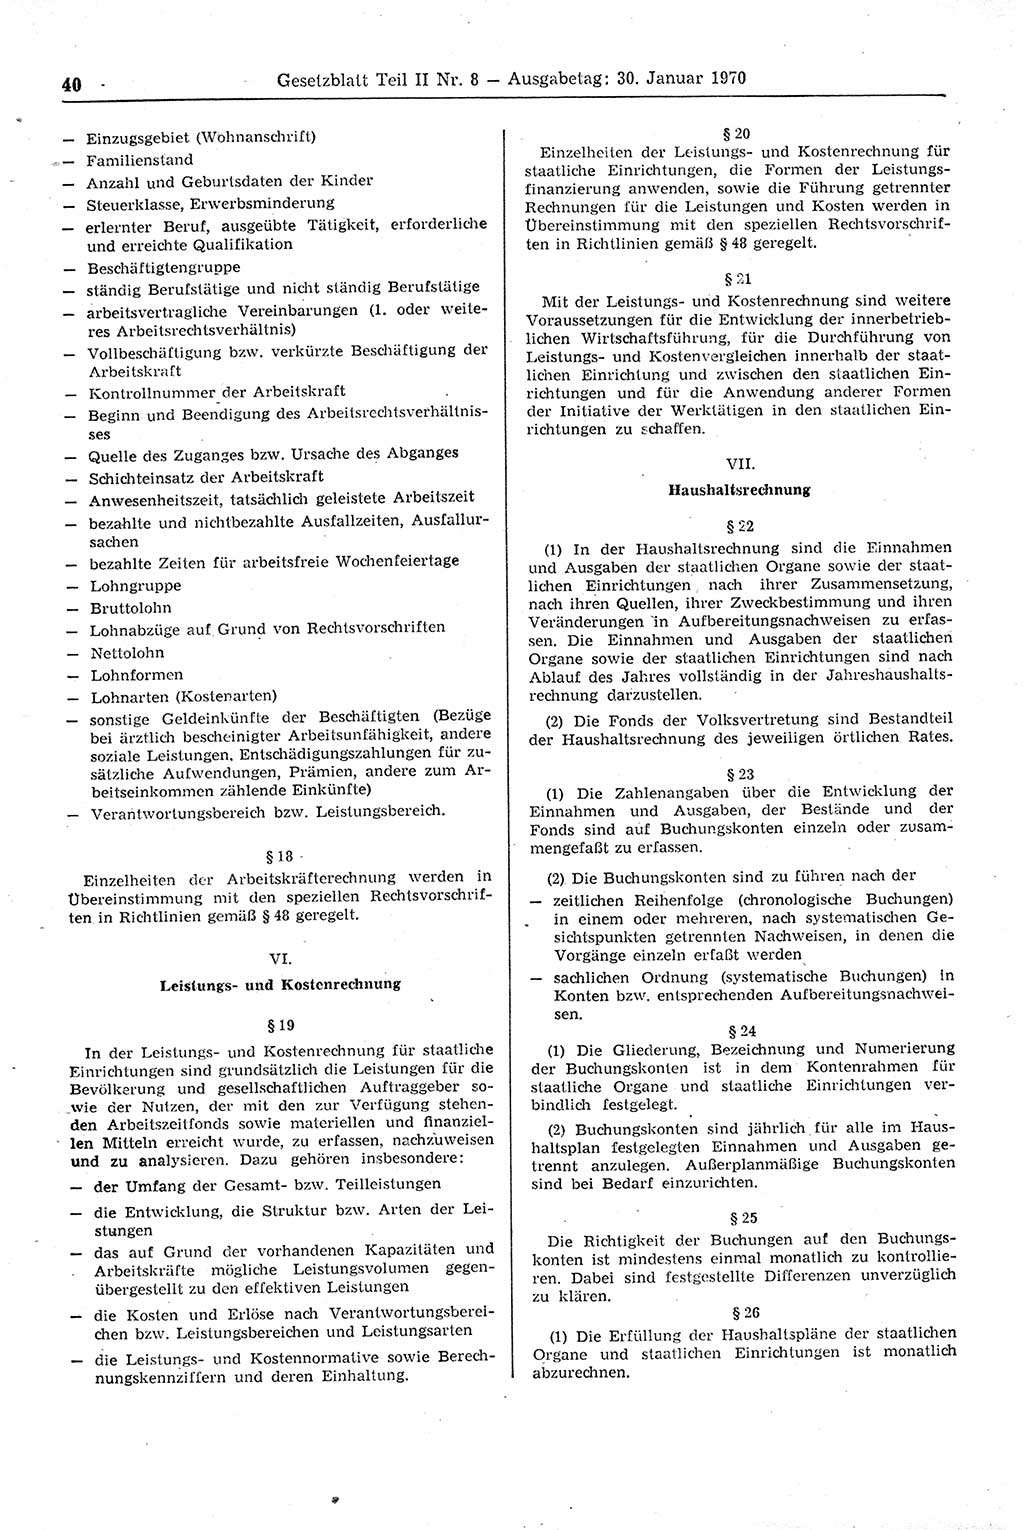 Gesetzblatt (GBl.) der Deutschen Demokratischen Republik (DDR) Teil ⅠⅠ 1970, Seite 40 (GBl. DDR ⅠⅠ 1970, S. 40)